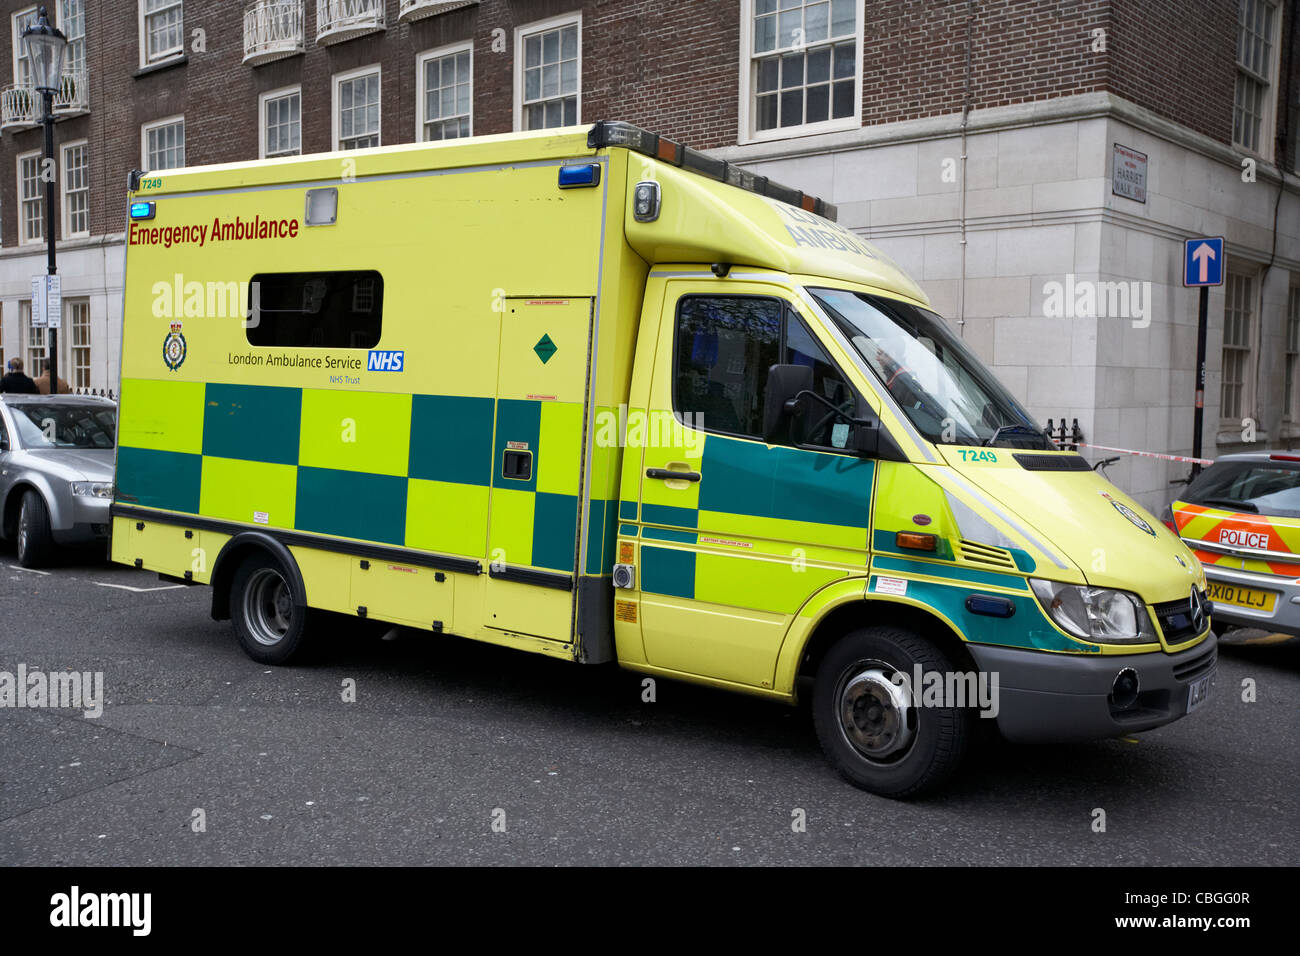 london ambulance service emergency vehicle on callout at incident england uk united kingdom Stock Photo